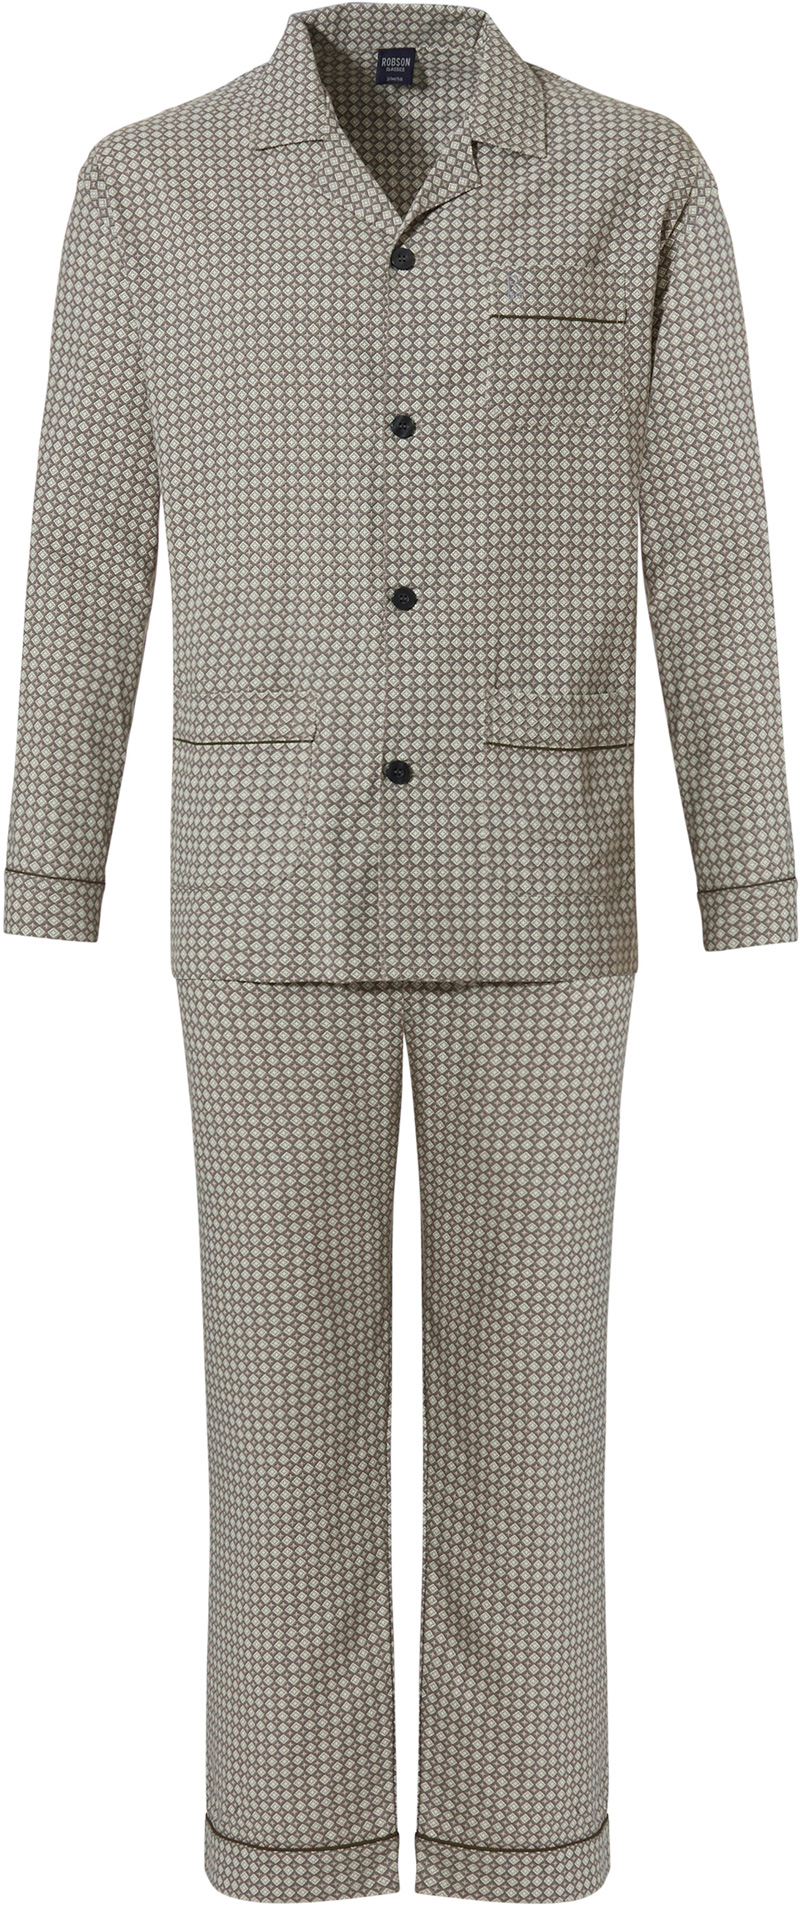 Robson pyjama met print bruin grijs